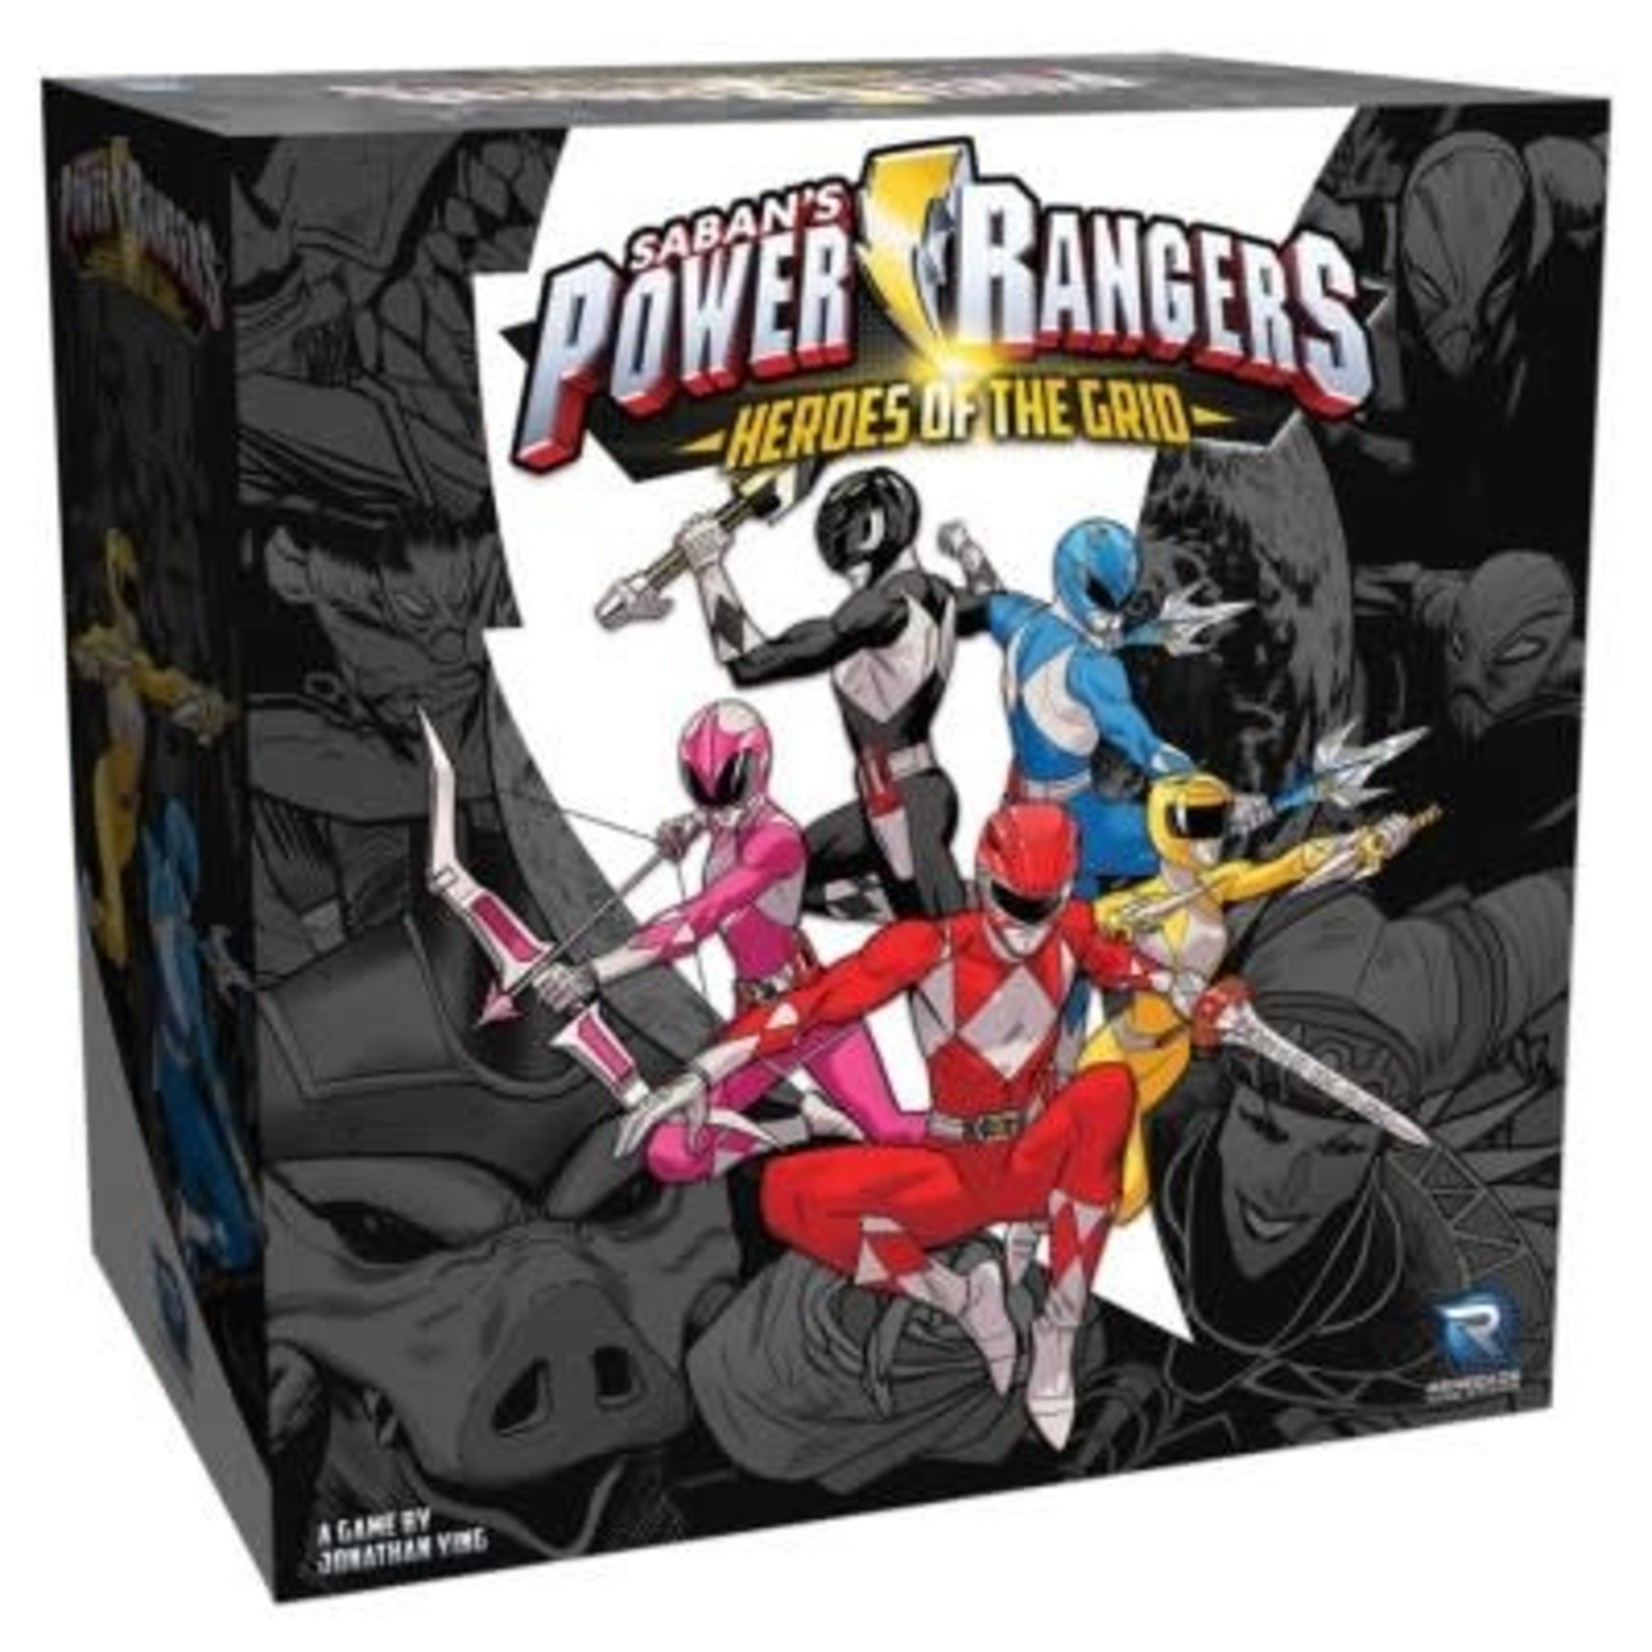 Renegade Power Rangers: Heroes of the Grid